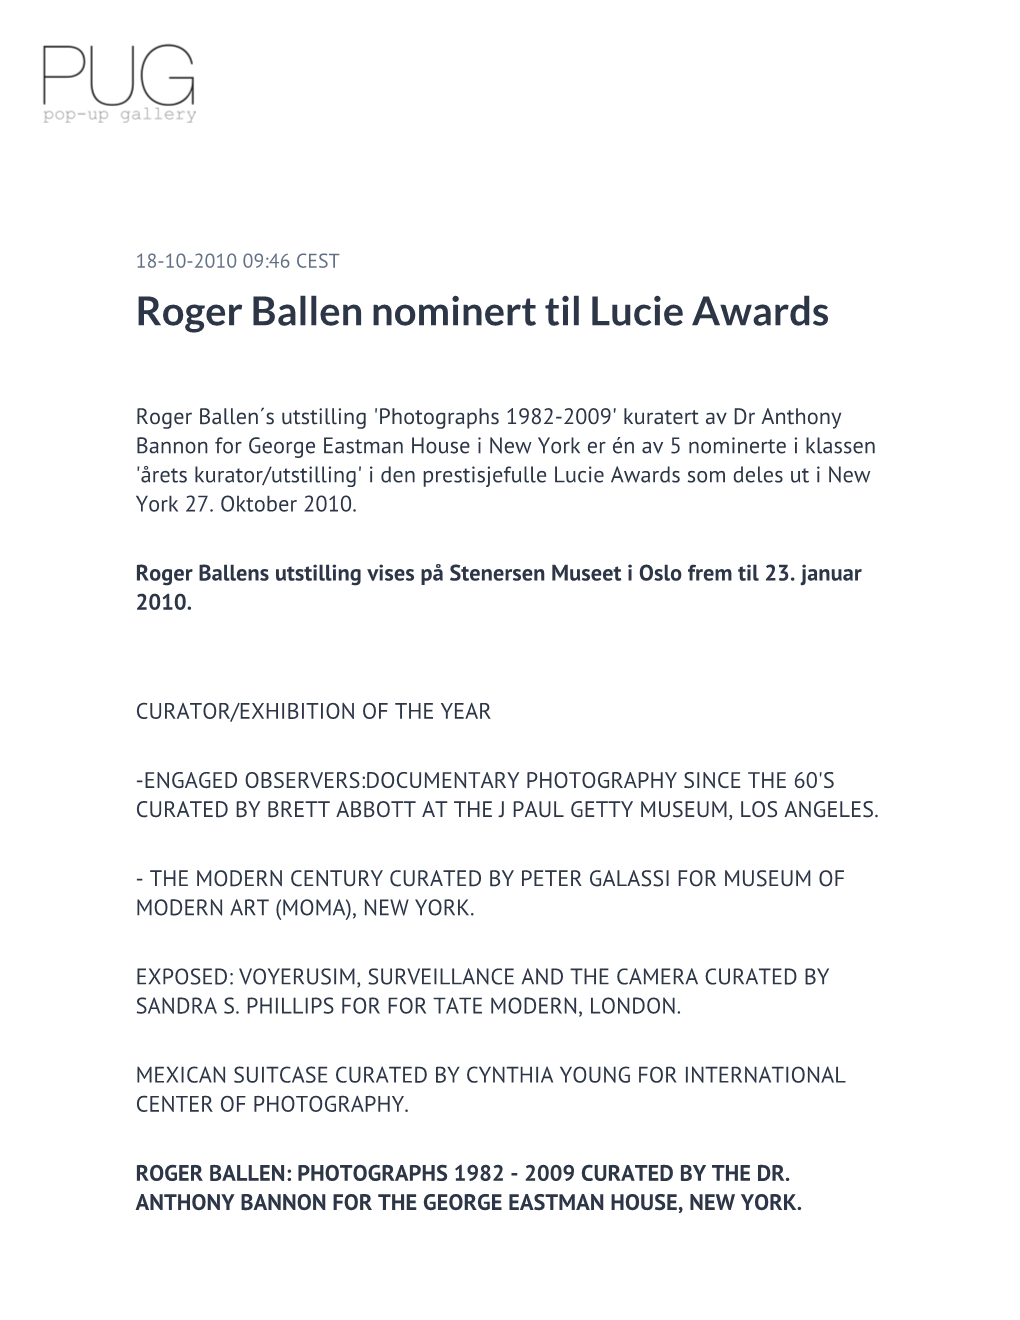 Roger Ballen Nominert Til Lucie Awards